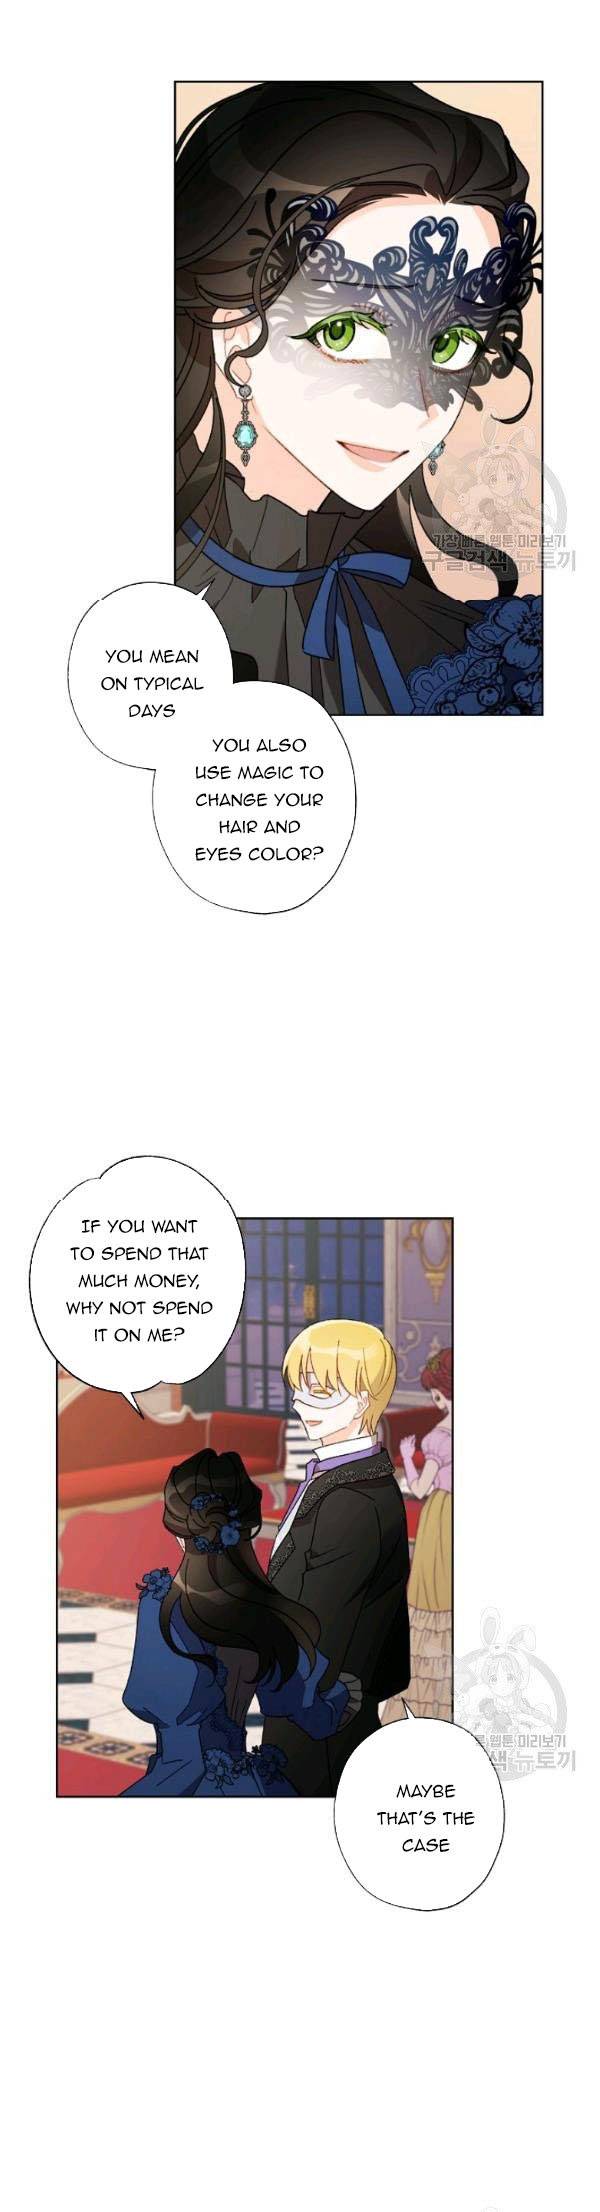 I Raised Cinderella Preciously - Page 1